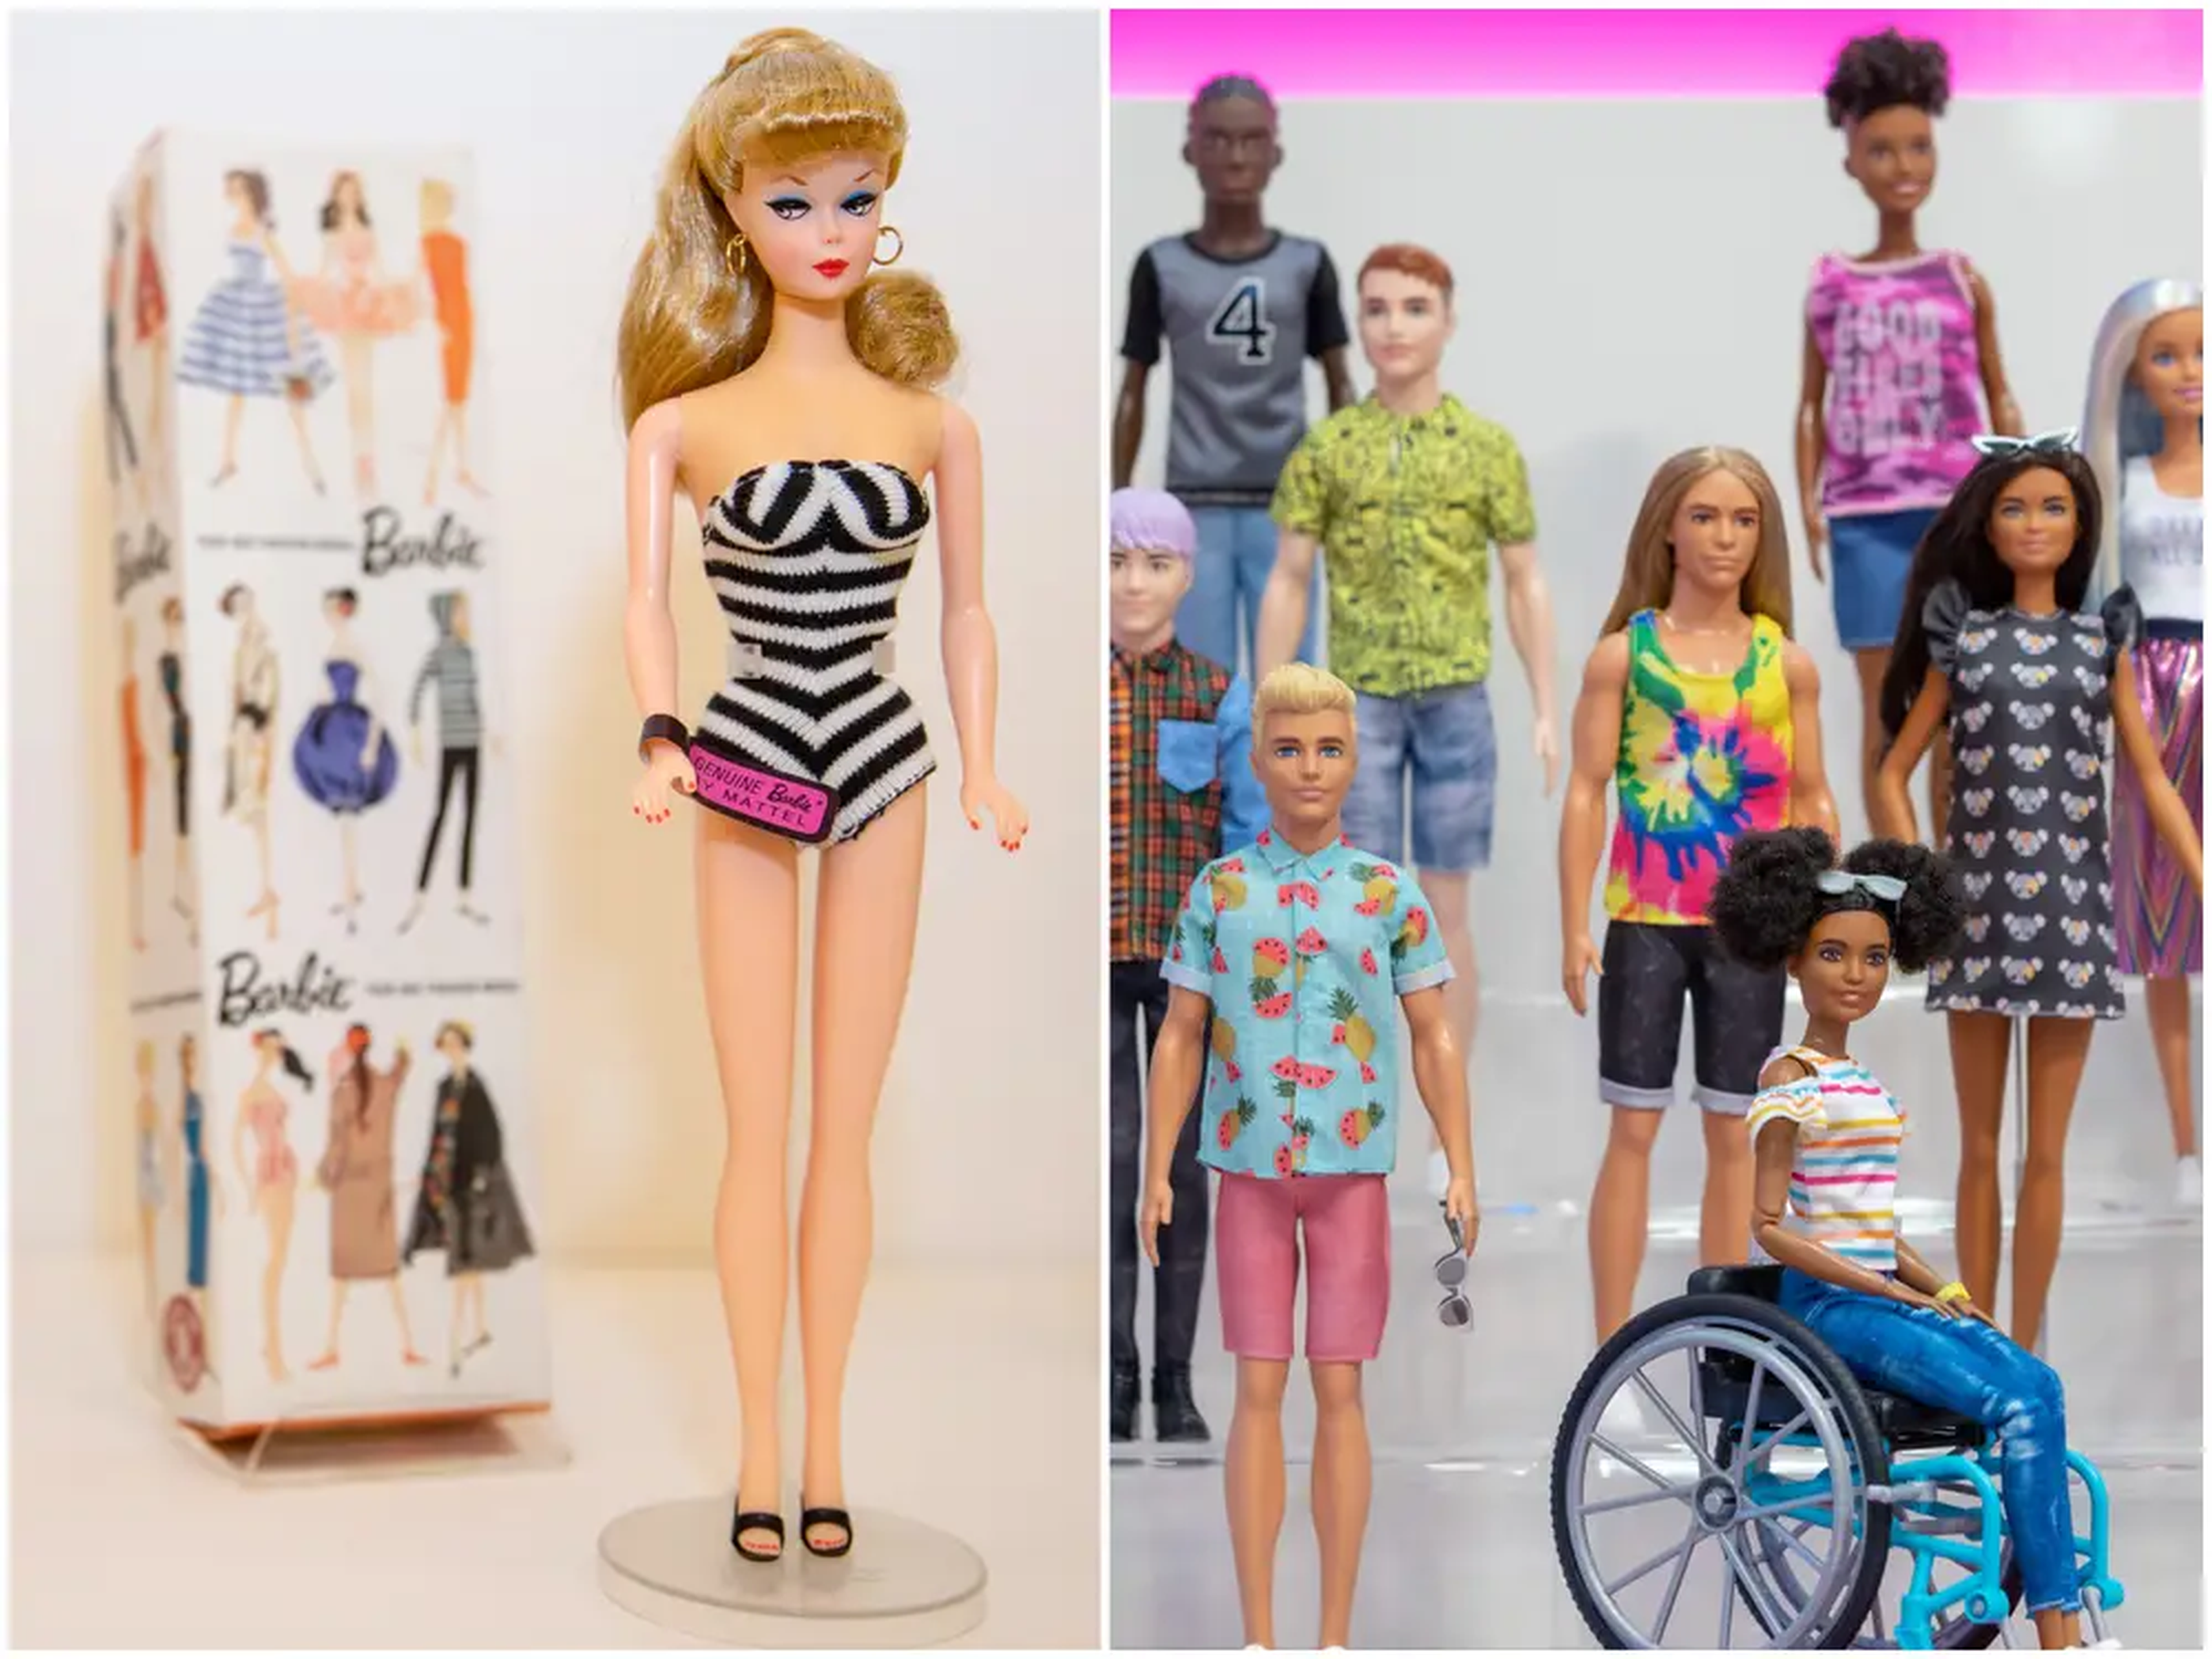 La primera muñeca Barbie fue lanzada por la compañía de juguetes Mattel en 1959. Las muñecas de ahora tienen distintos tonos de piel, diversidad corporal y género.